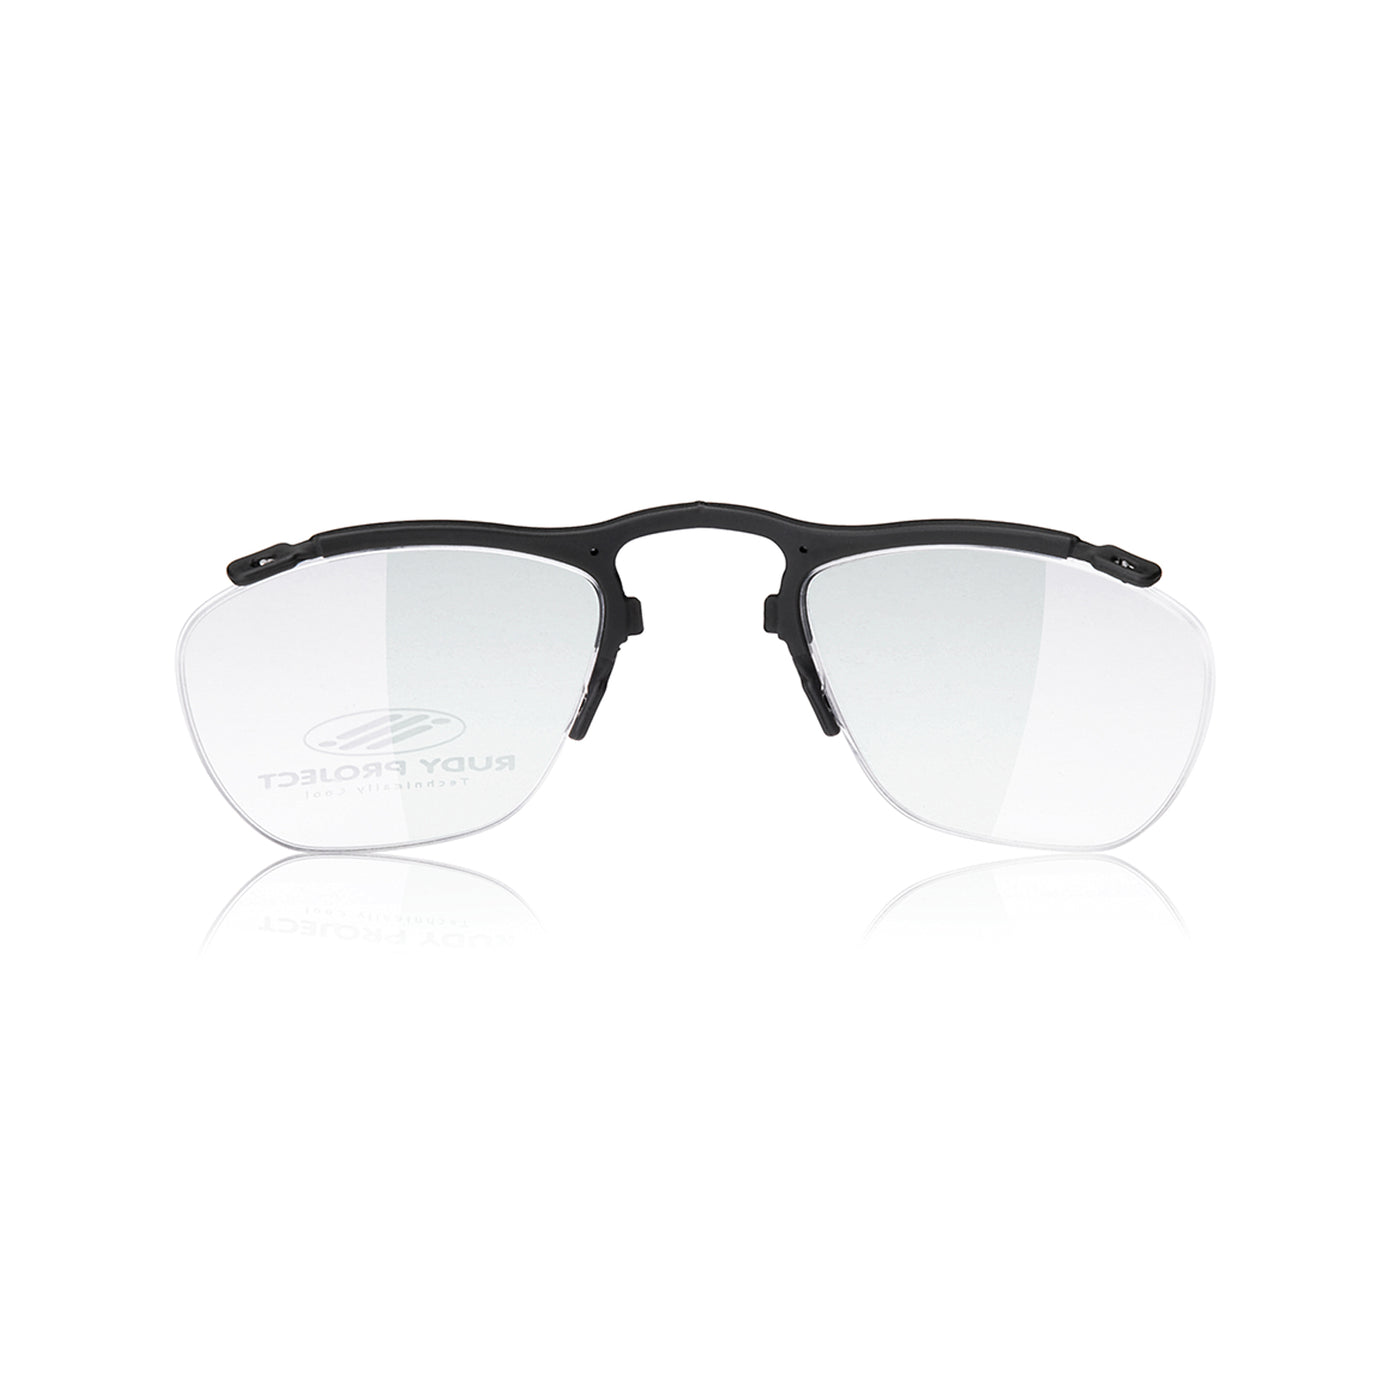 Semi Rimless Rx Insert for Non-Shield Sunglasses